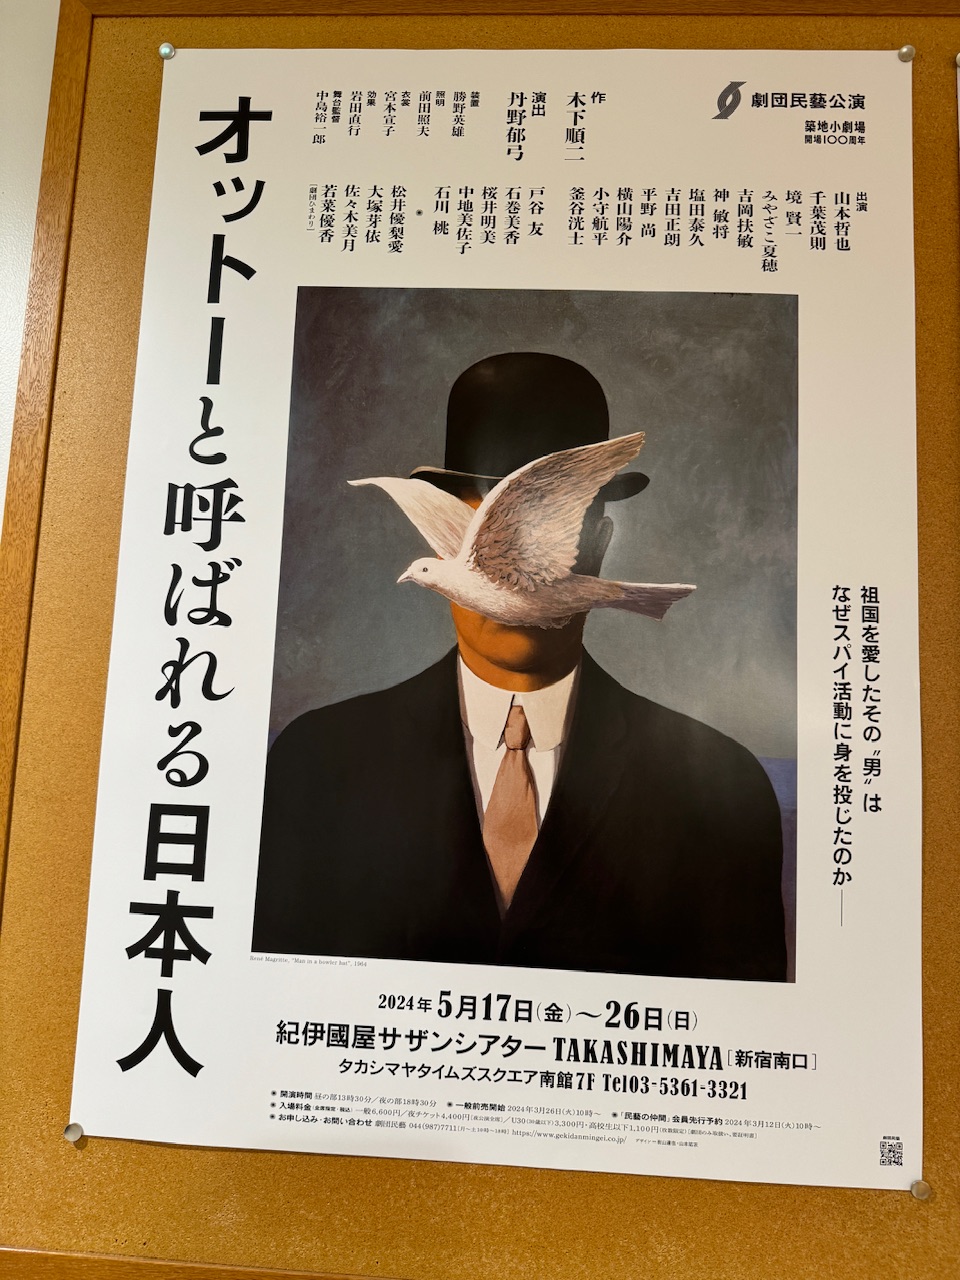 劇団民藝公演「オットーと呼ばれる日本人」